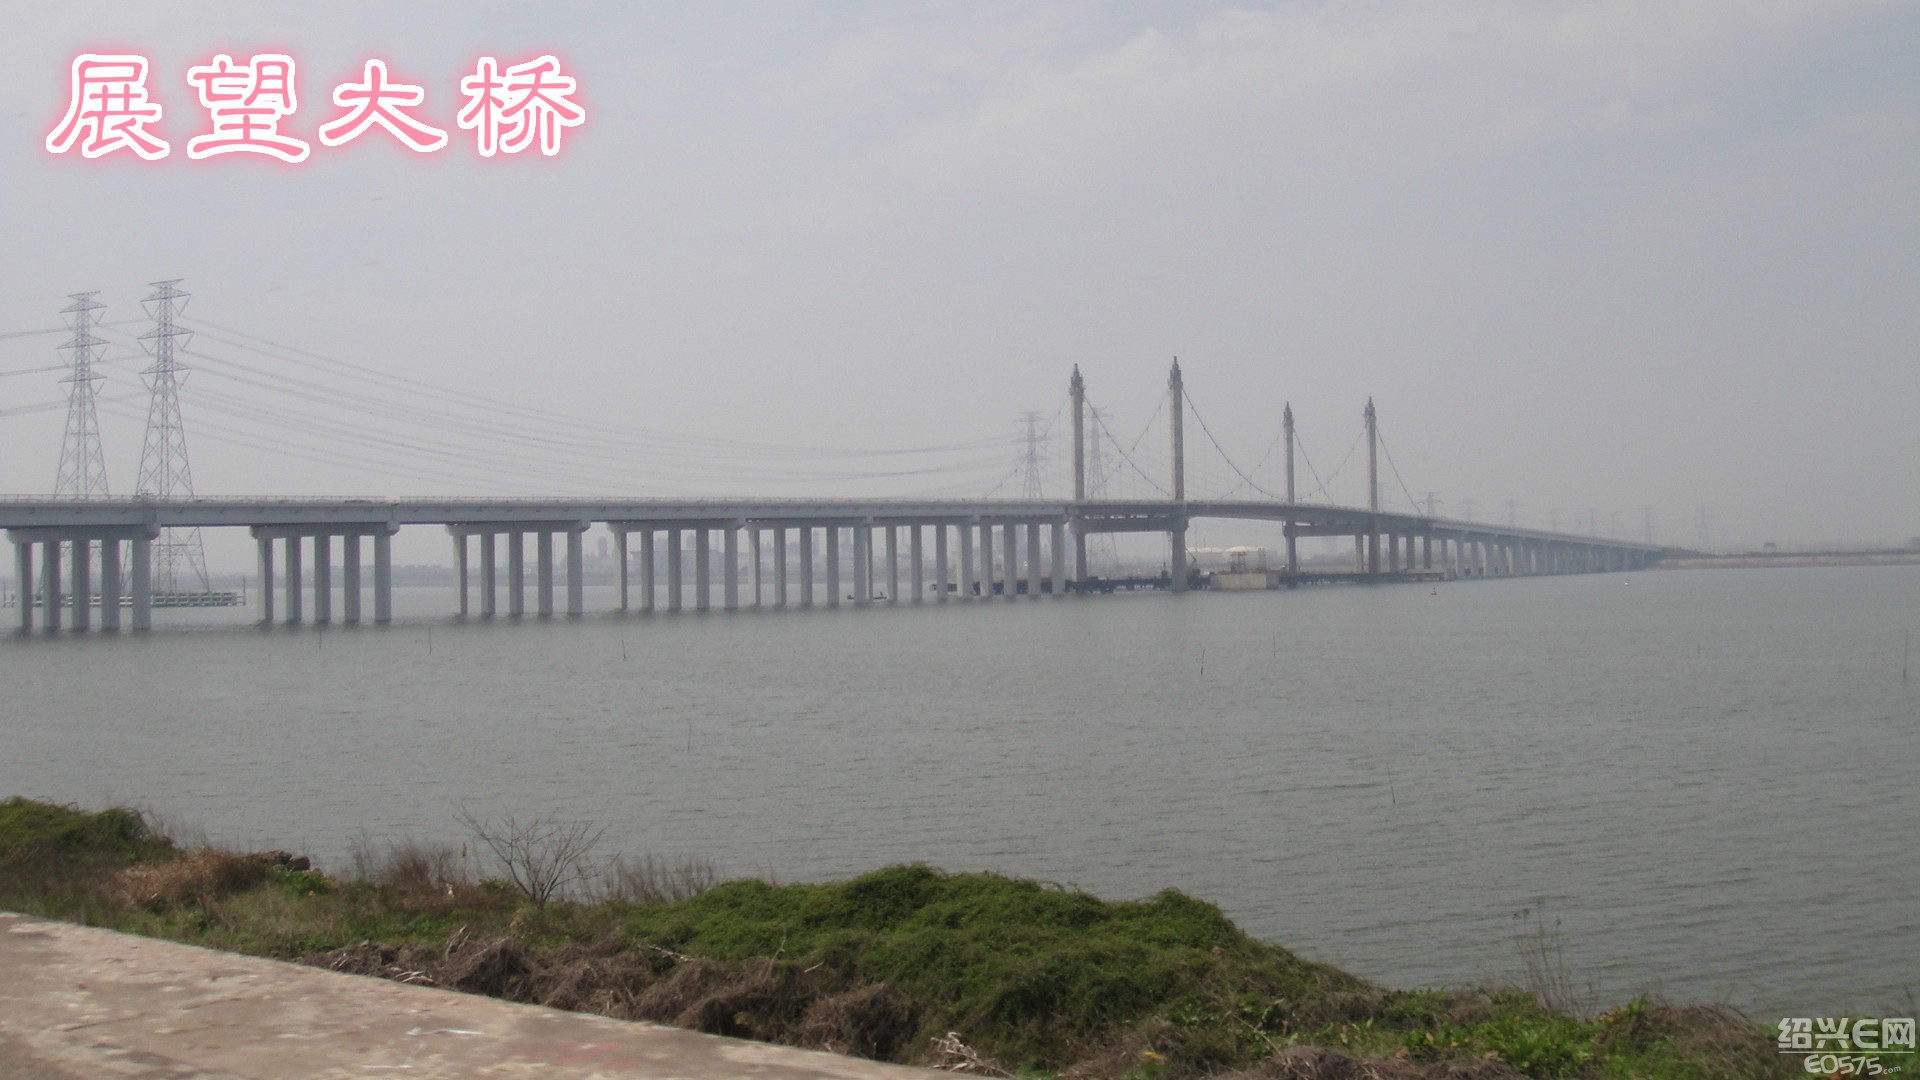 曹娥江三座大桥:其中世纪大桥2016年7月通车,展望大桥